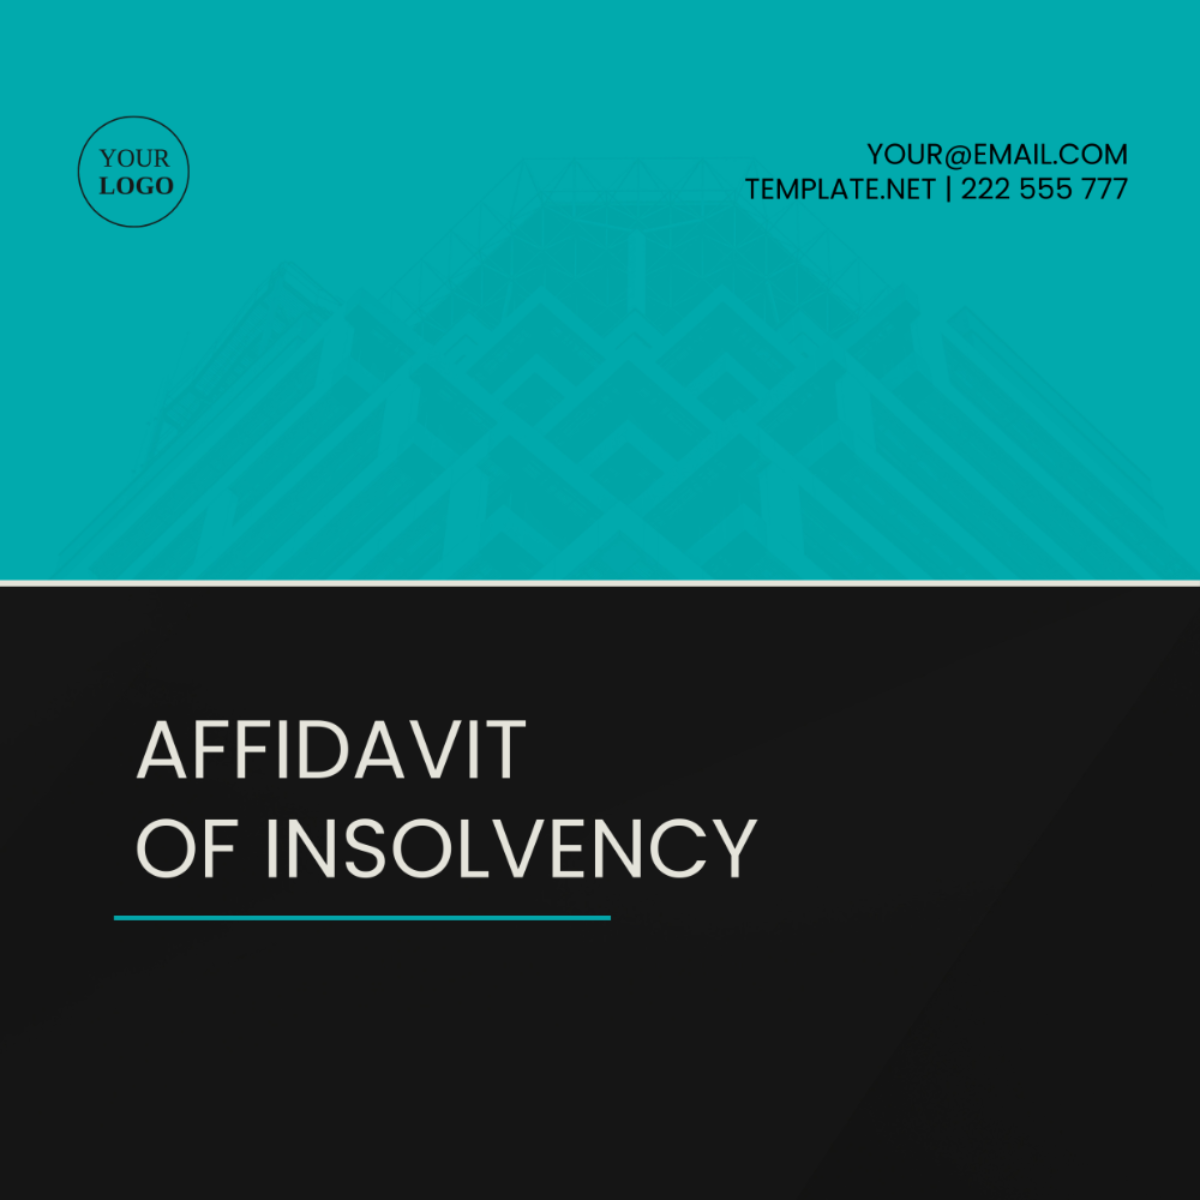 Affidavit of Insolvency Template